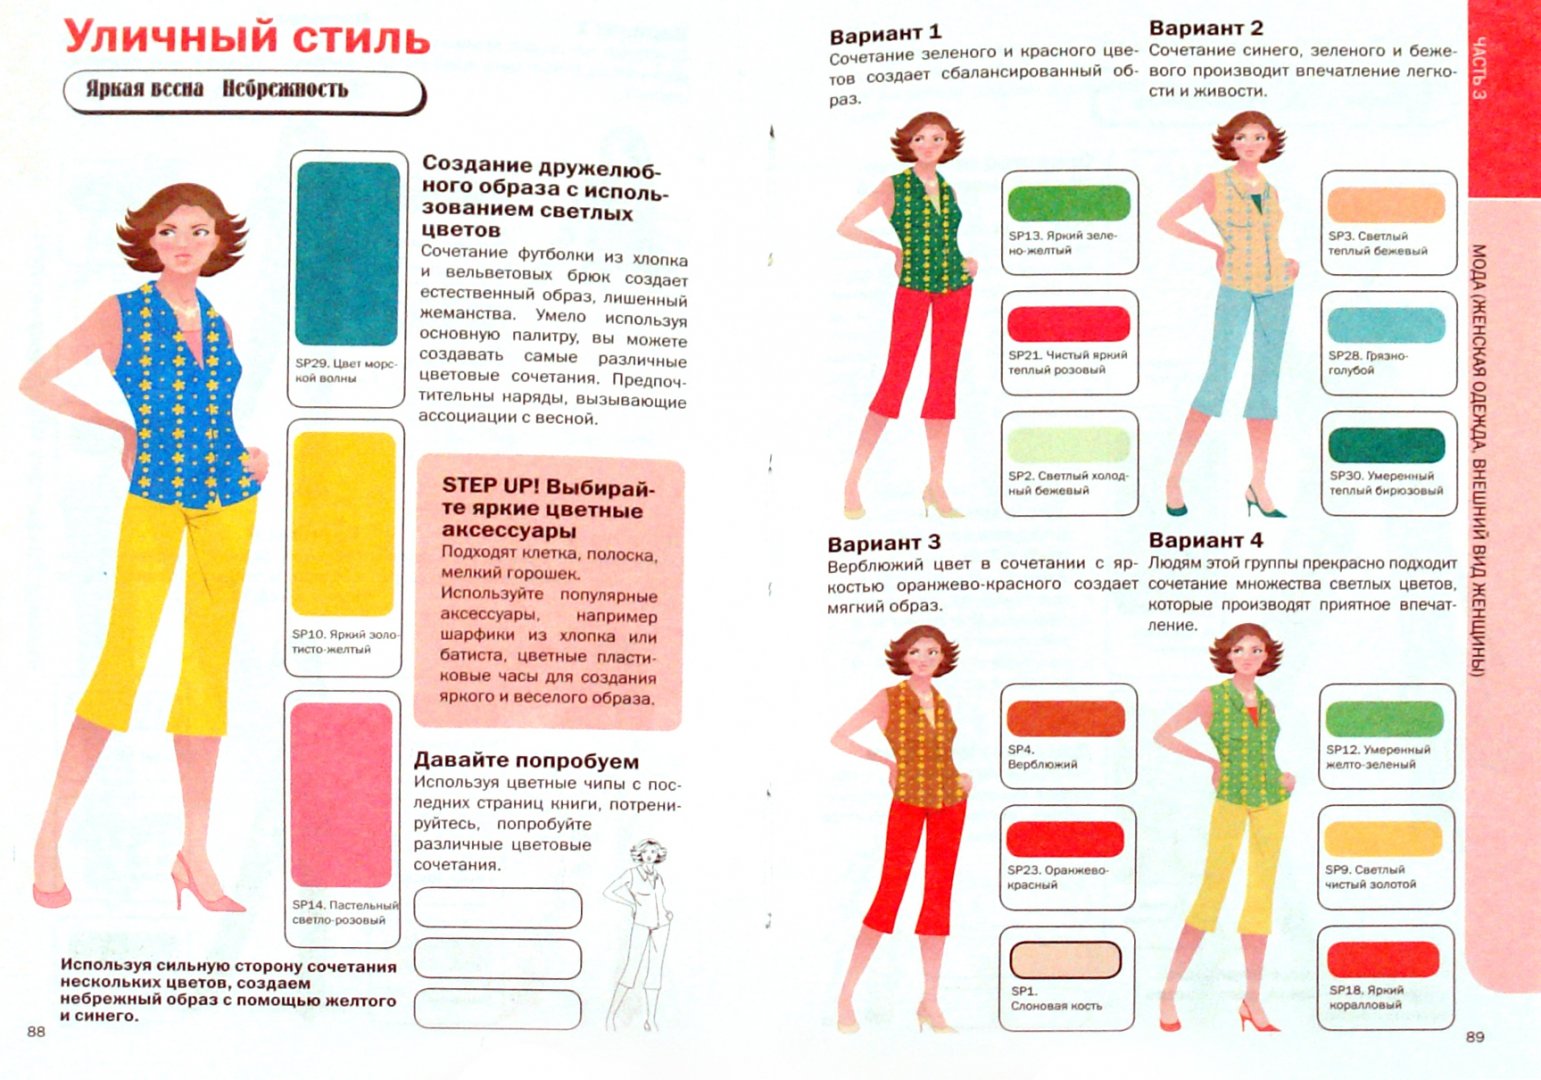 Иллюстрация 1 из 8 для Важные правила сочетания цветов | Лабиринт - книги. Источник: Лабиринт